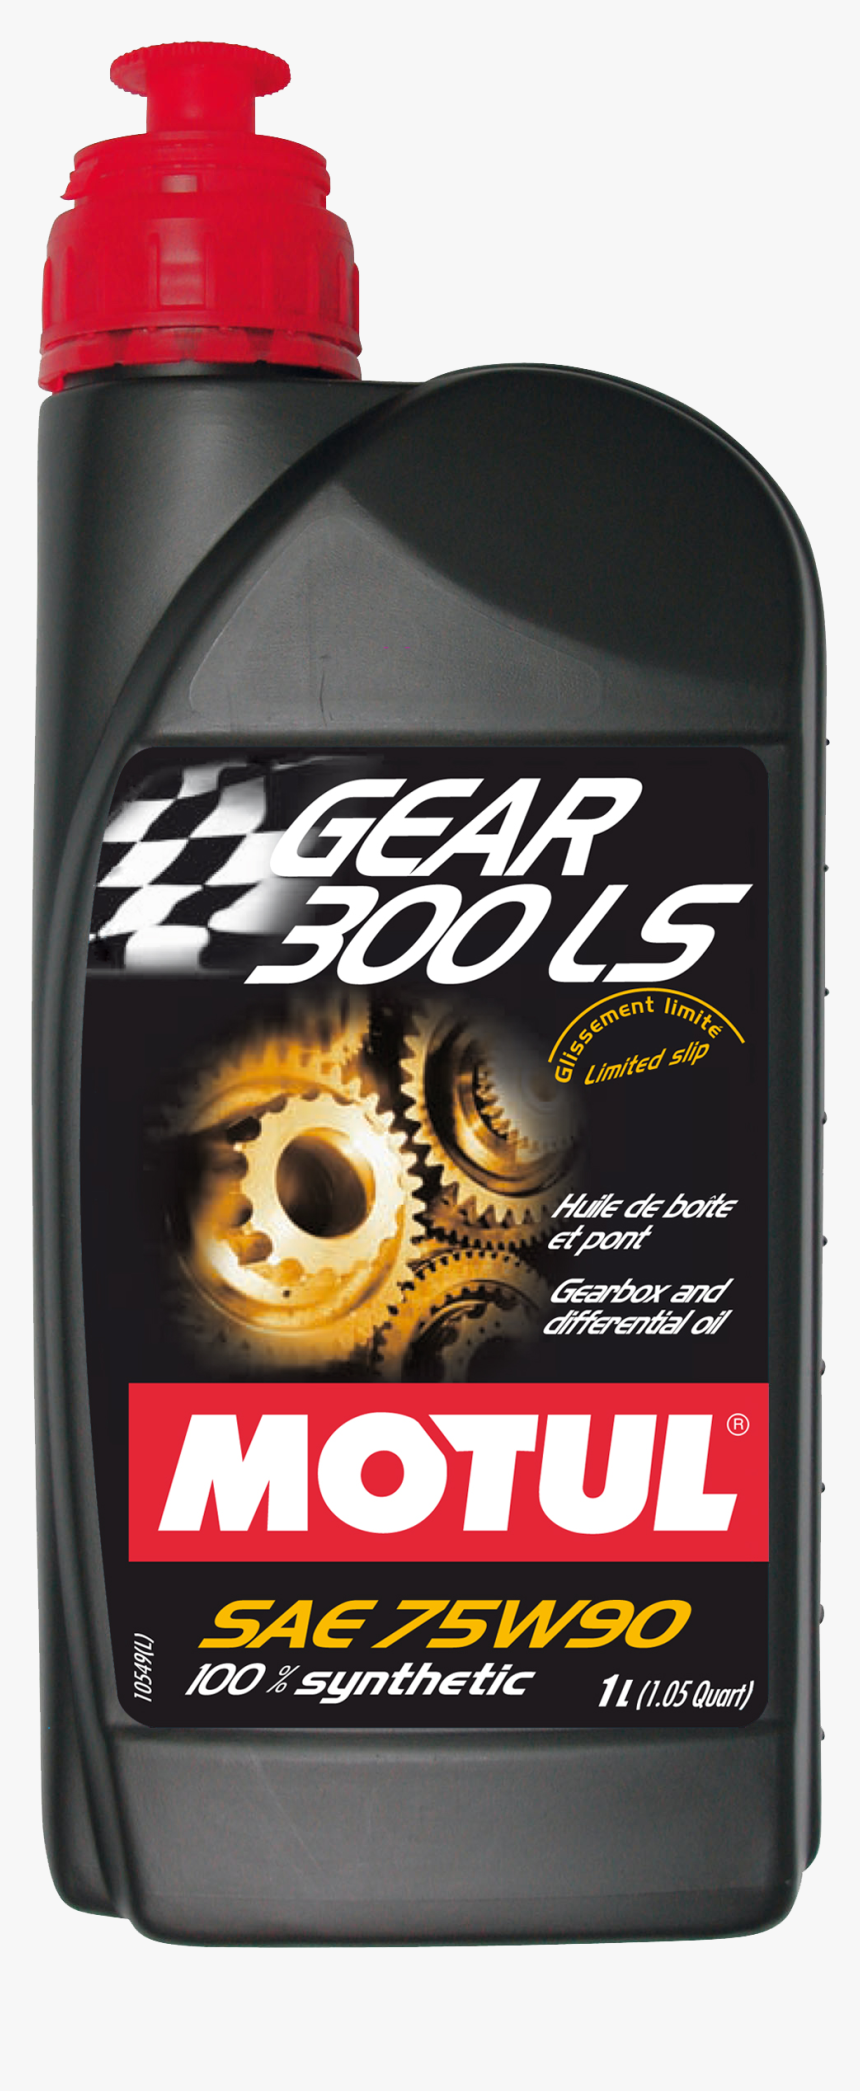 Motul Gear 300 Ls 75w 90, HD Png Download, Free Download